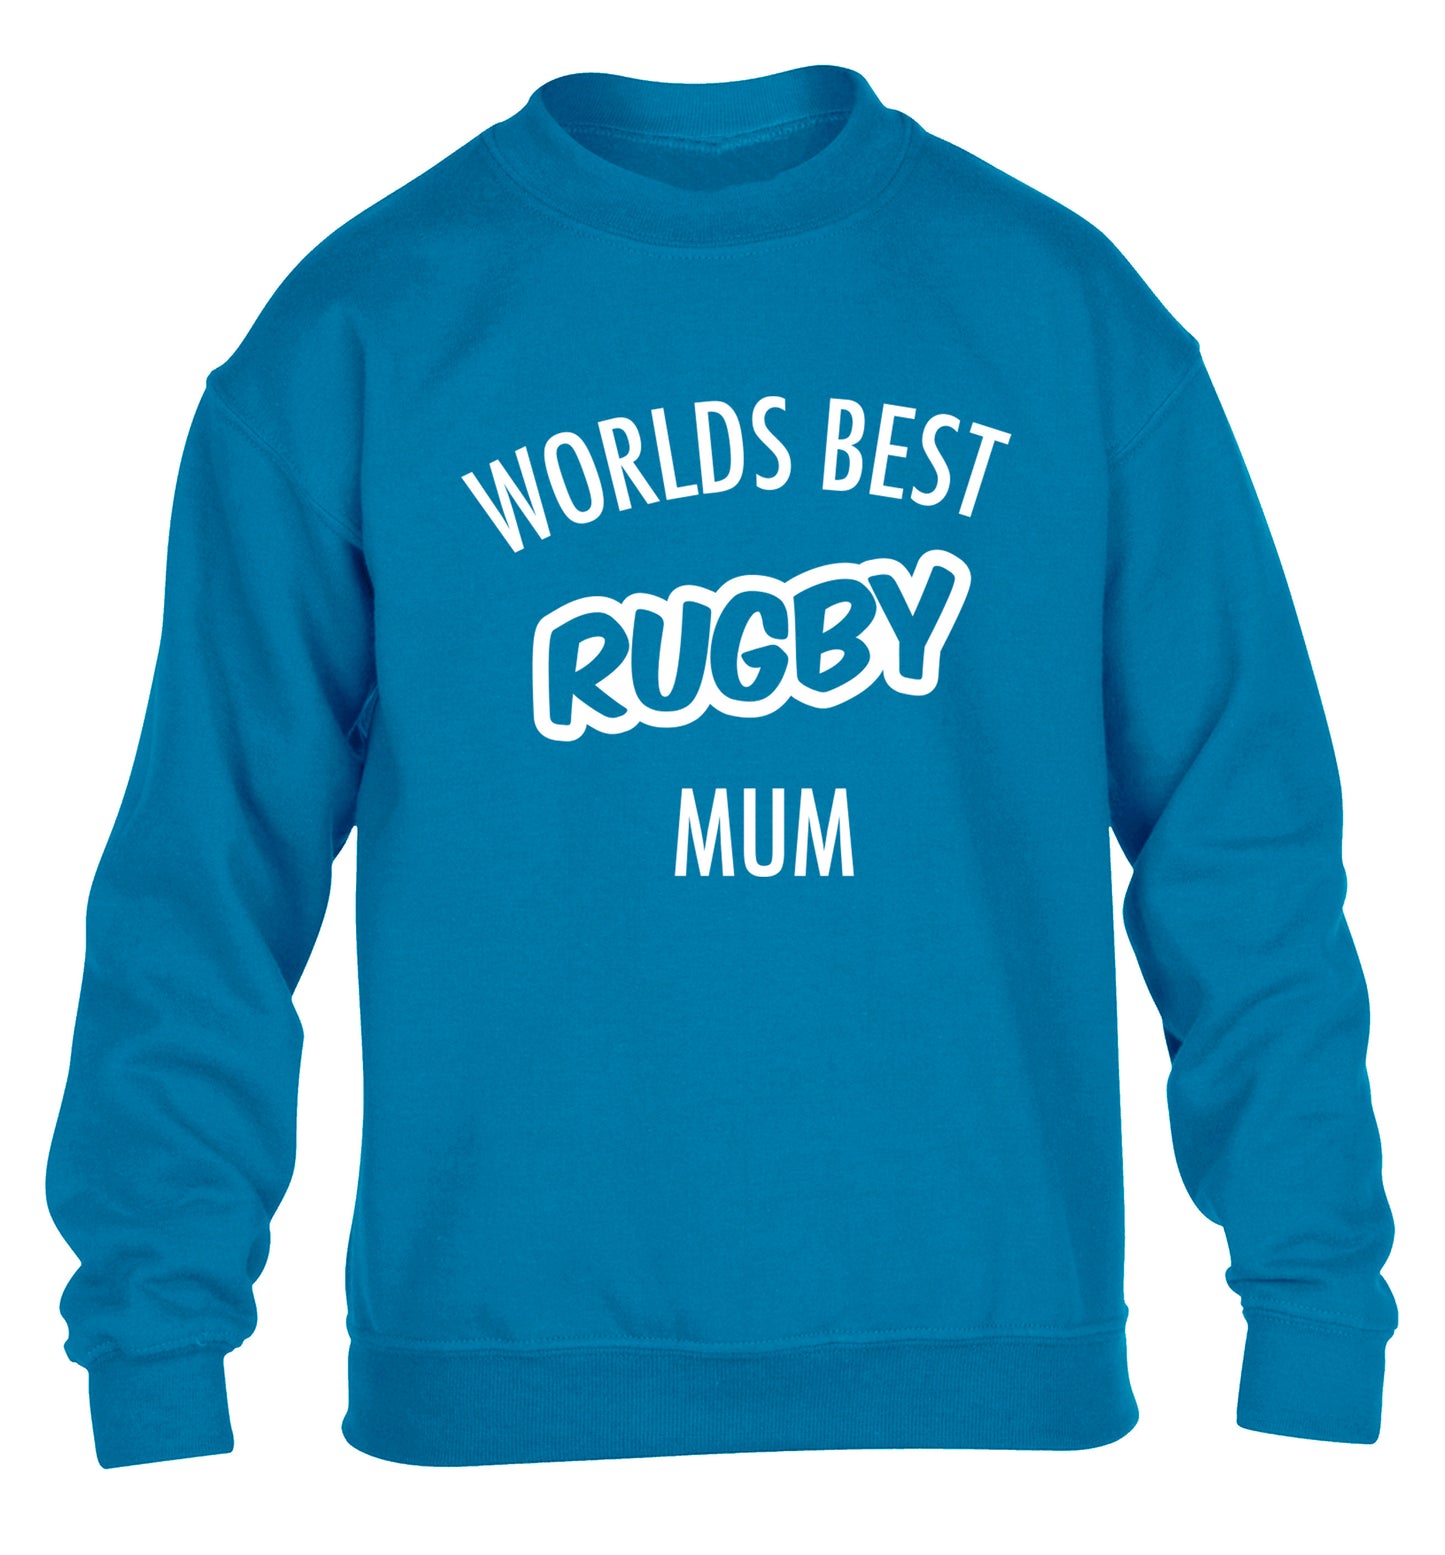 Worlds best rugby mum children's blue sweater 12-13 Years